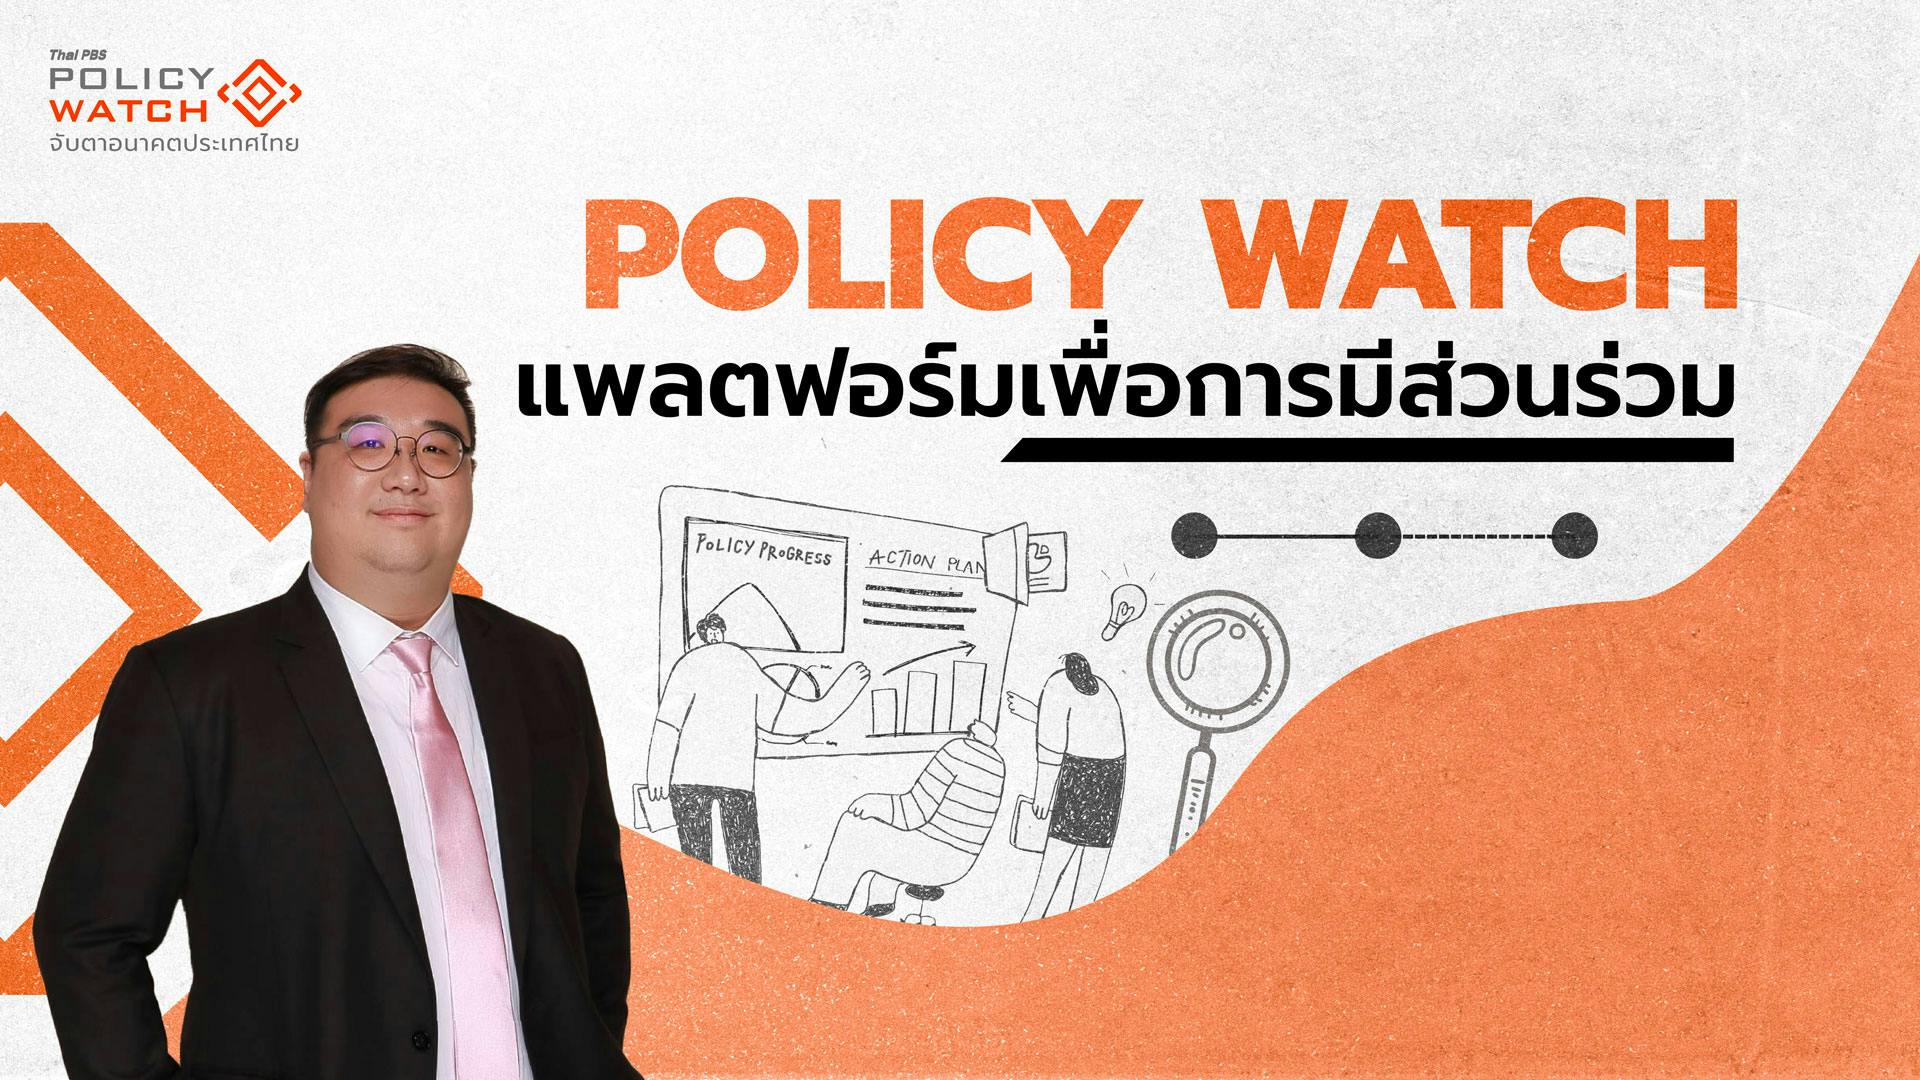 Policy Watch สะพานเชื่อม นโยบาย-สาธารณะ เพื่อการมีส่วนร่วม